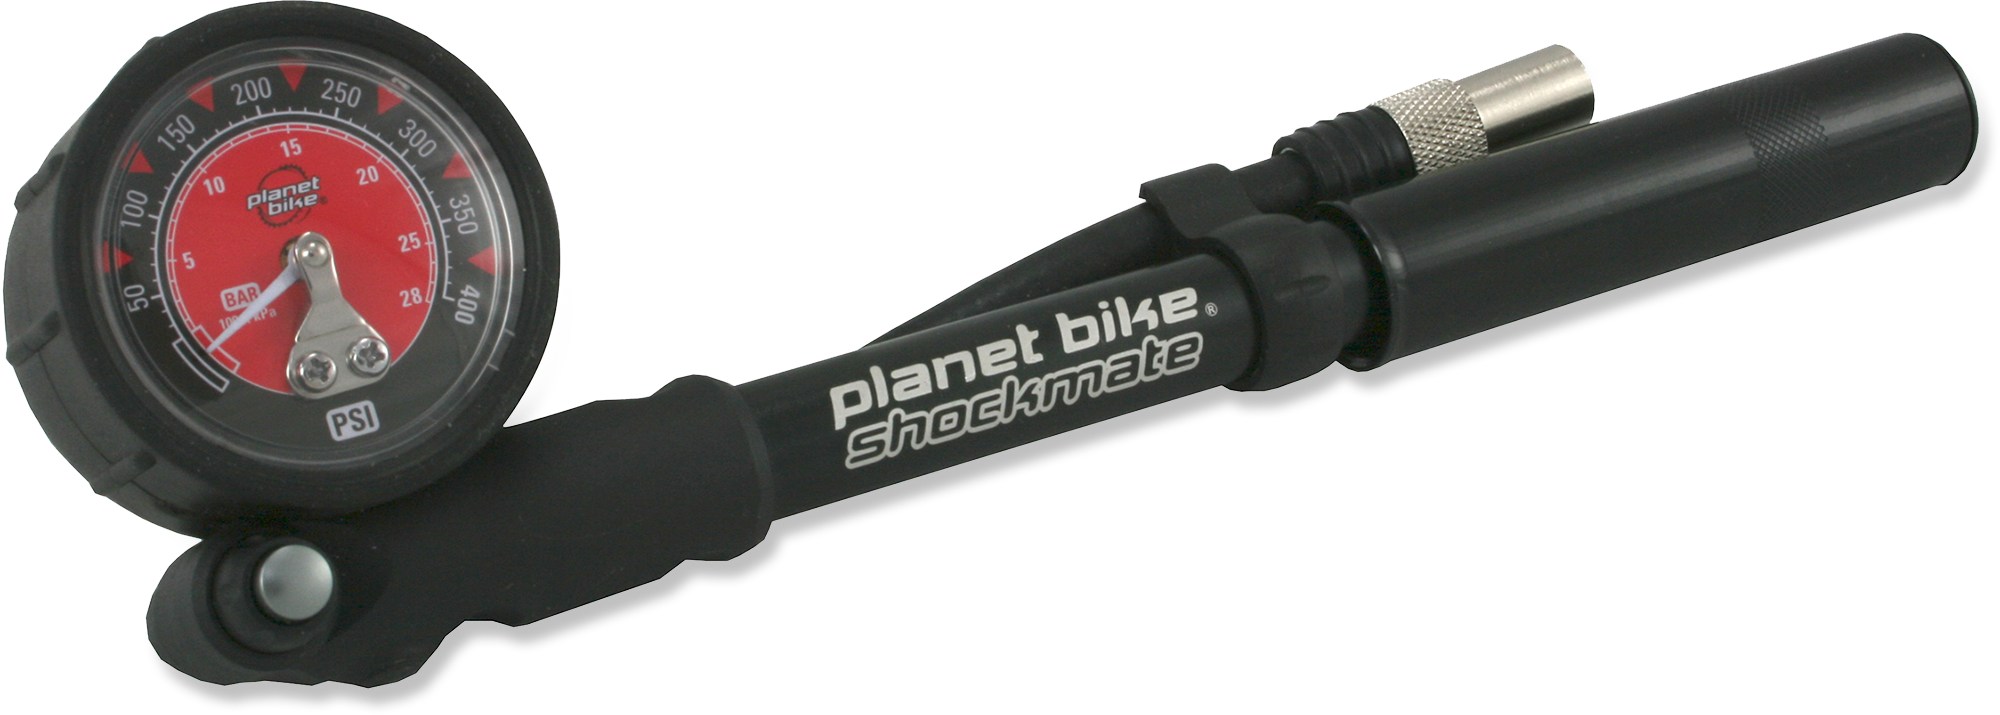 air shock pump mountain bike